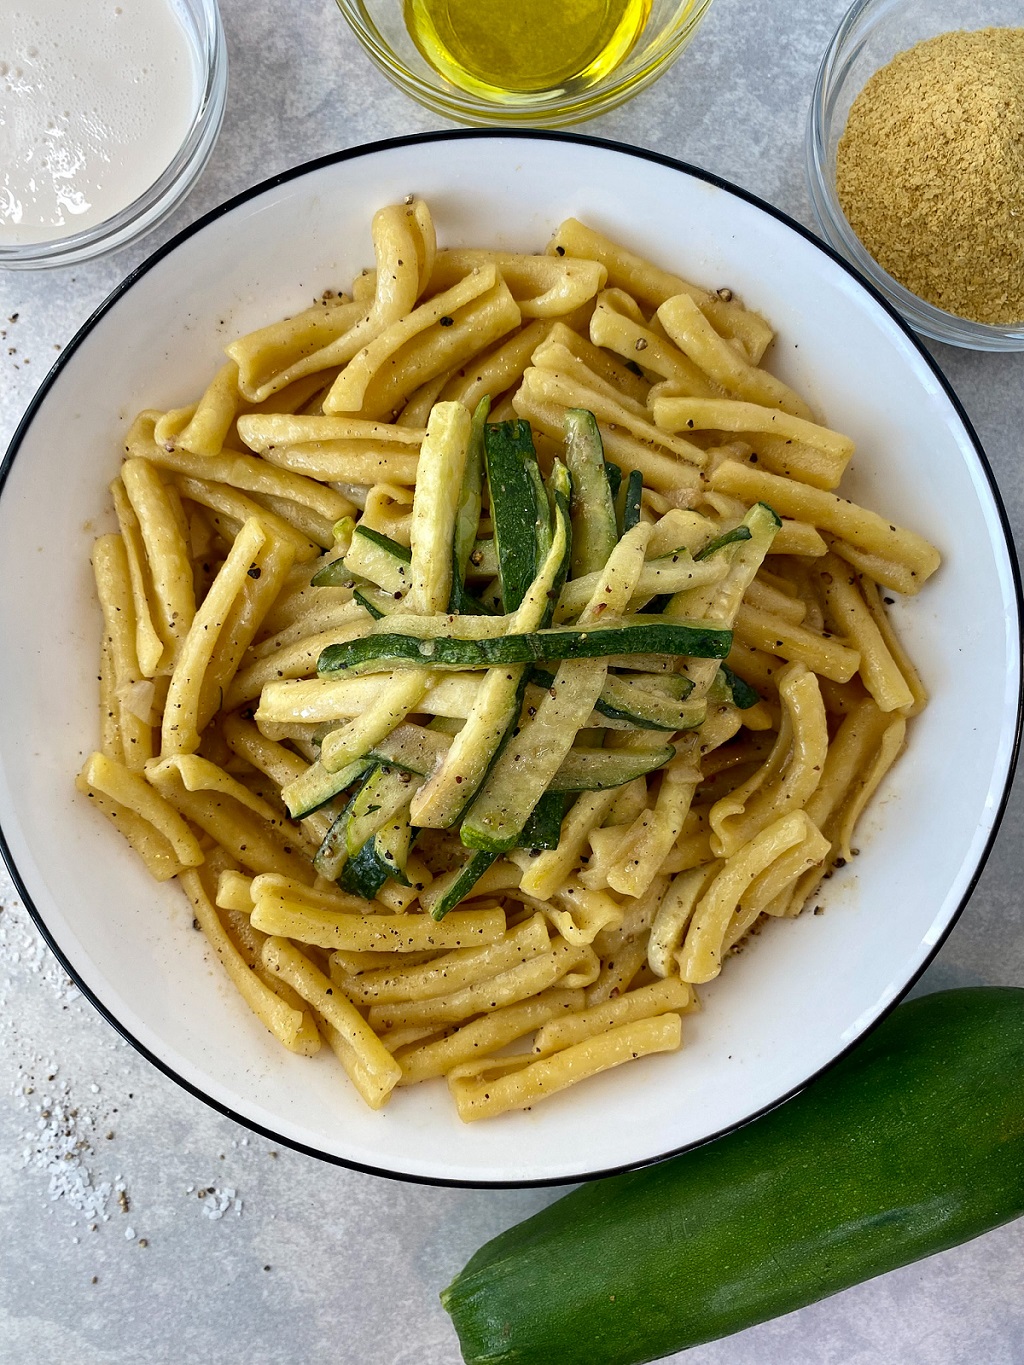 Cheesy Casarecce Pasta with Zucchini